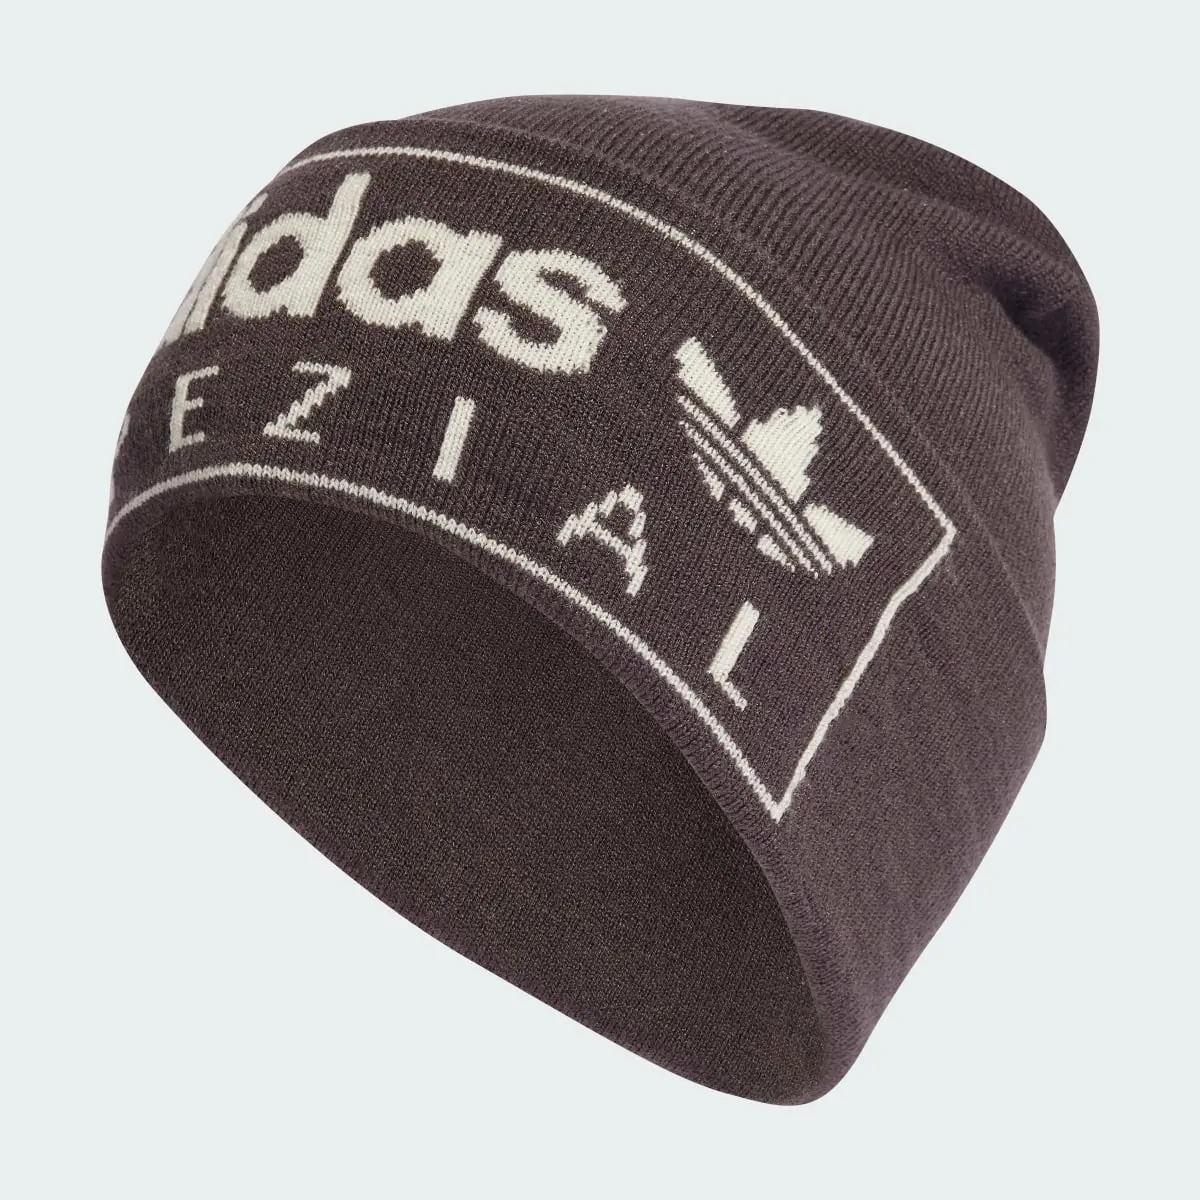 Adidas Spezial Cap. 2